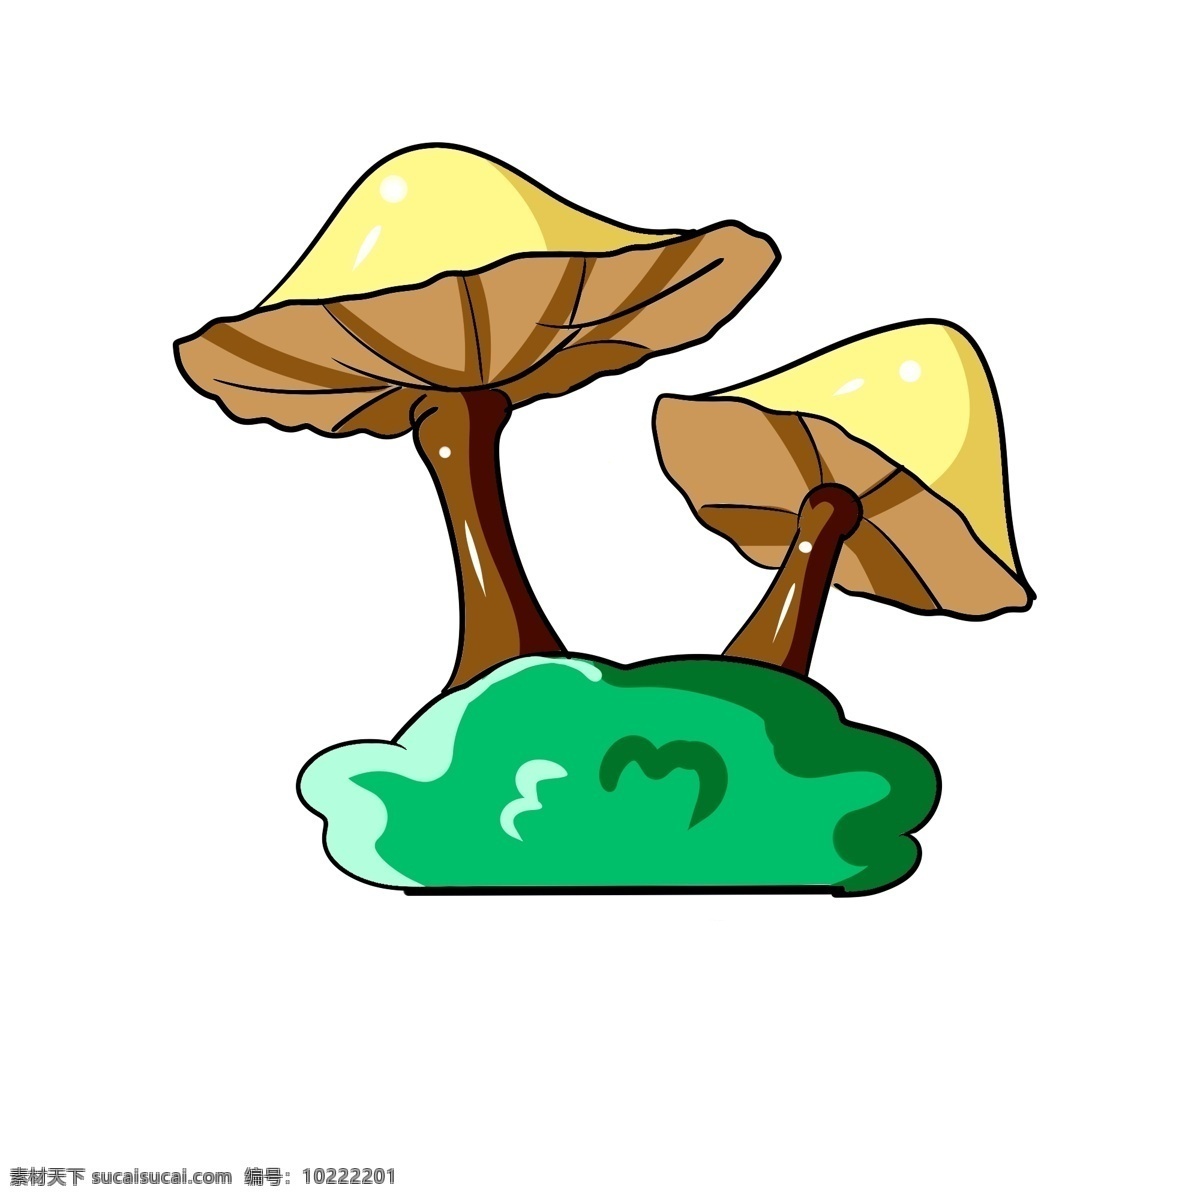 雨伞 形状 蘑菇 插图 黄色蘑菇 雨伞蘑菇 绿色植物 植物图案 棕色柱体 立体蘑菇 蔬菜蘑菇 形状蘑菇